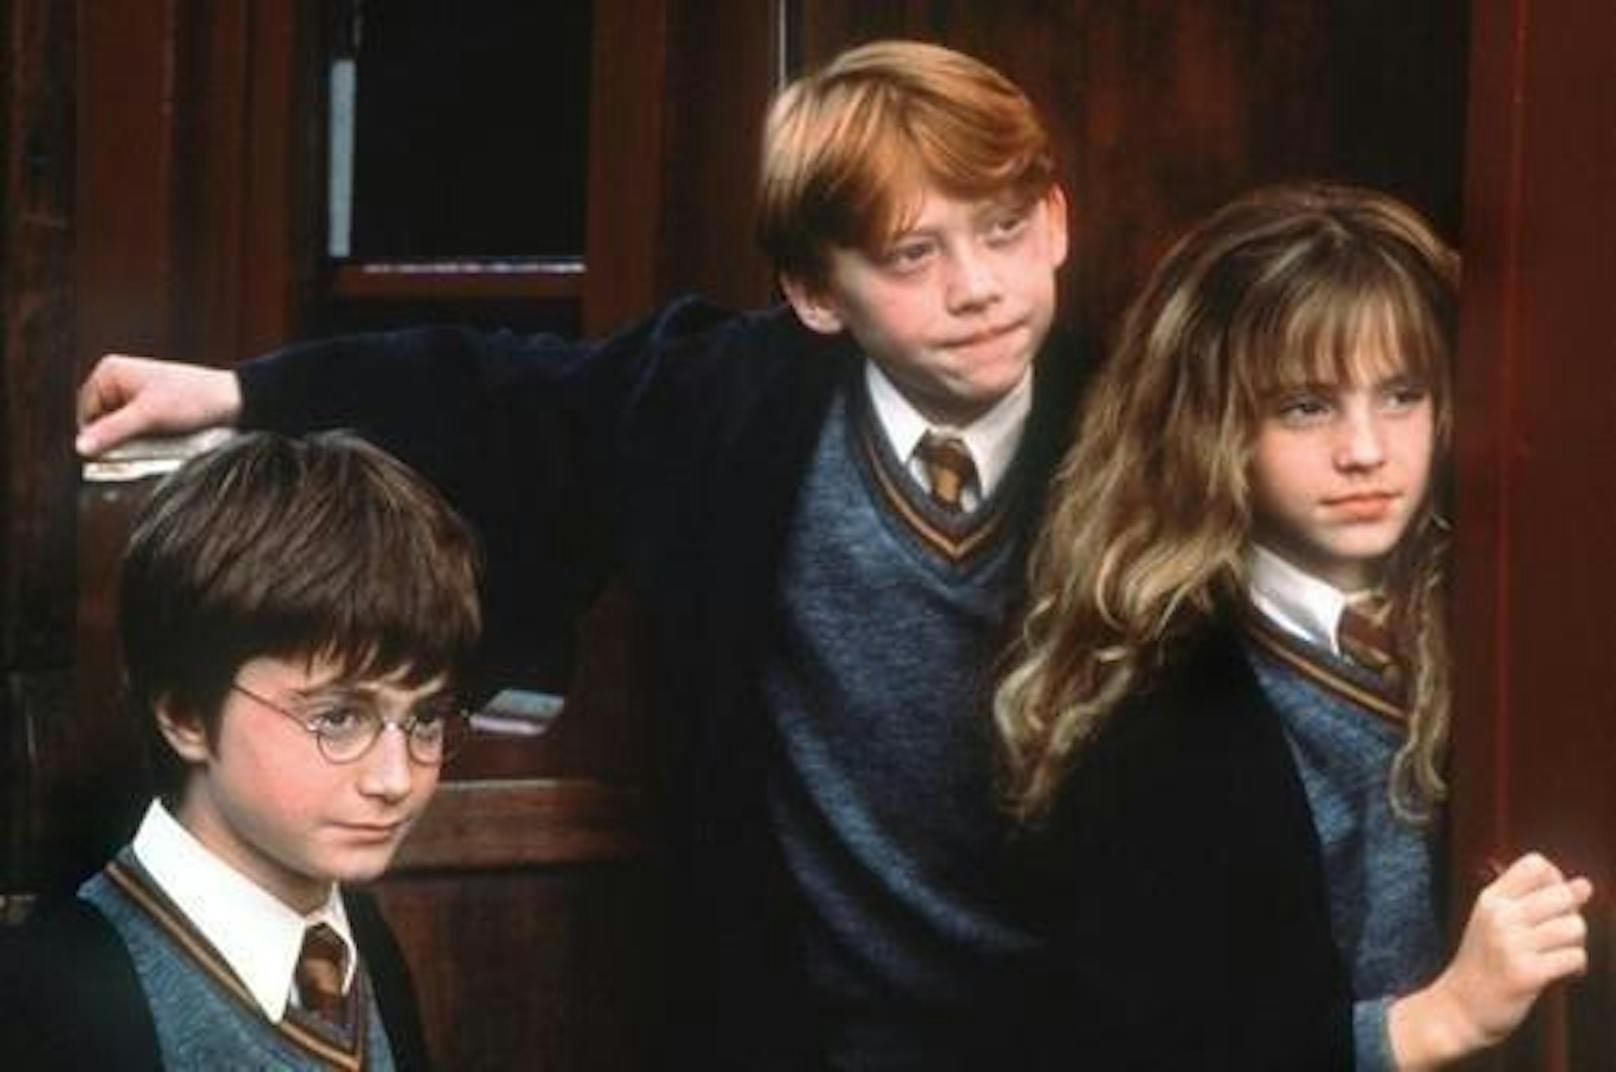 Unter der Regie von Chris Columbus kam das erste Harry Potter-Abenteuer 2001 unter dem Titel "Harry Potter and the Sorcerer's Stone" in die Kinos.